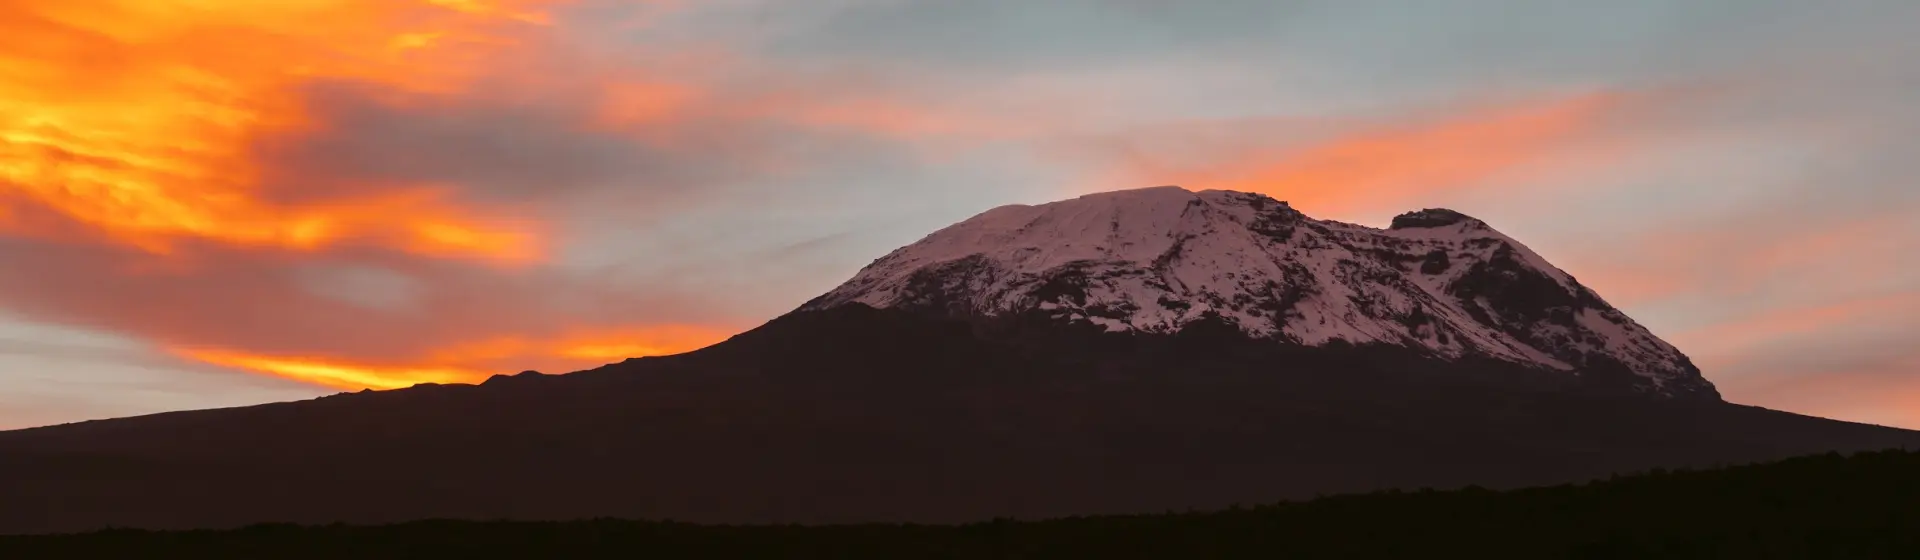 Маршруты восхождения на Килиманджаро